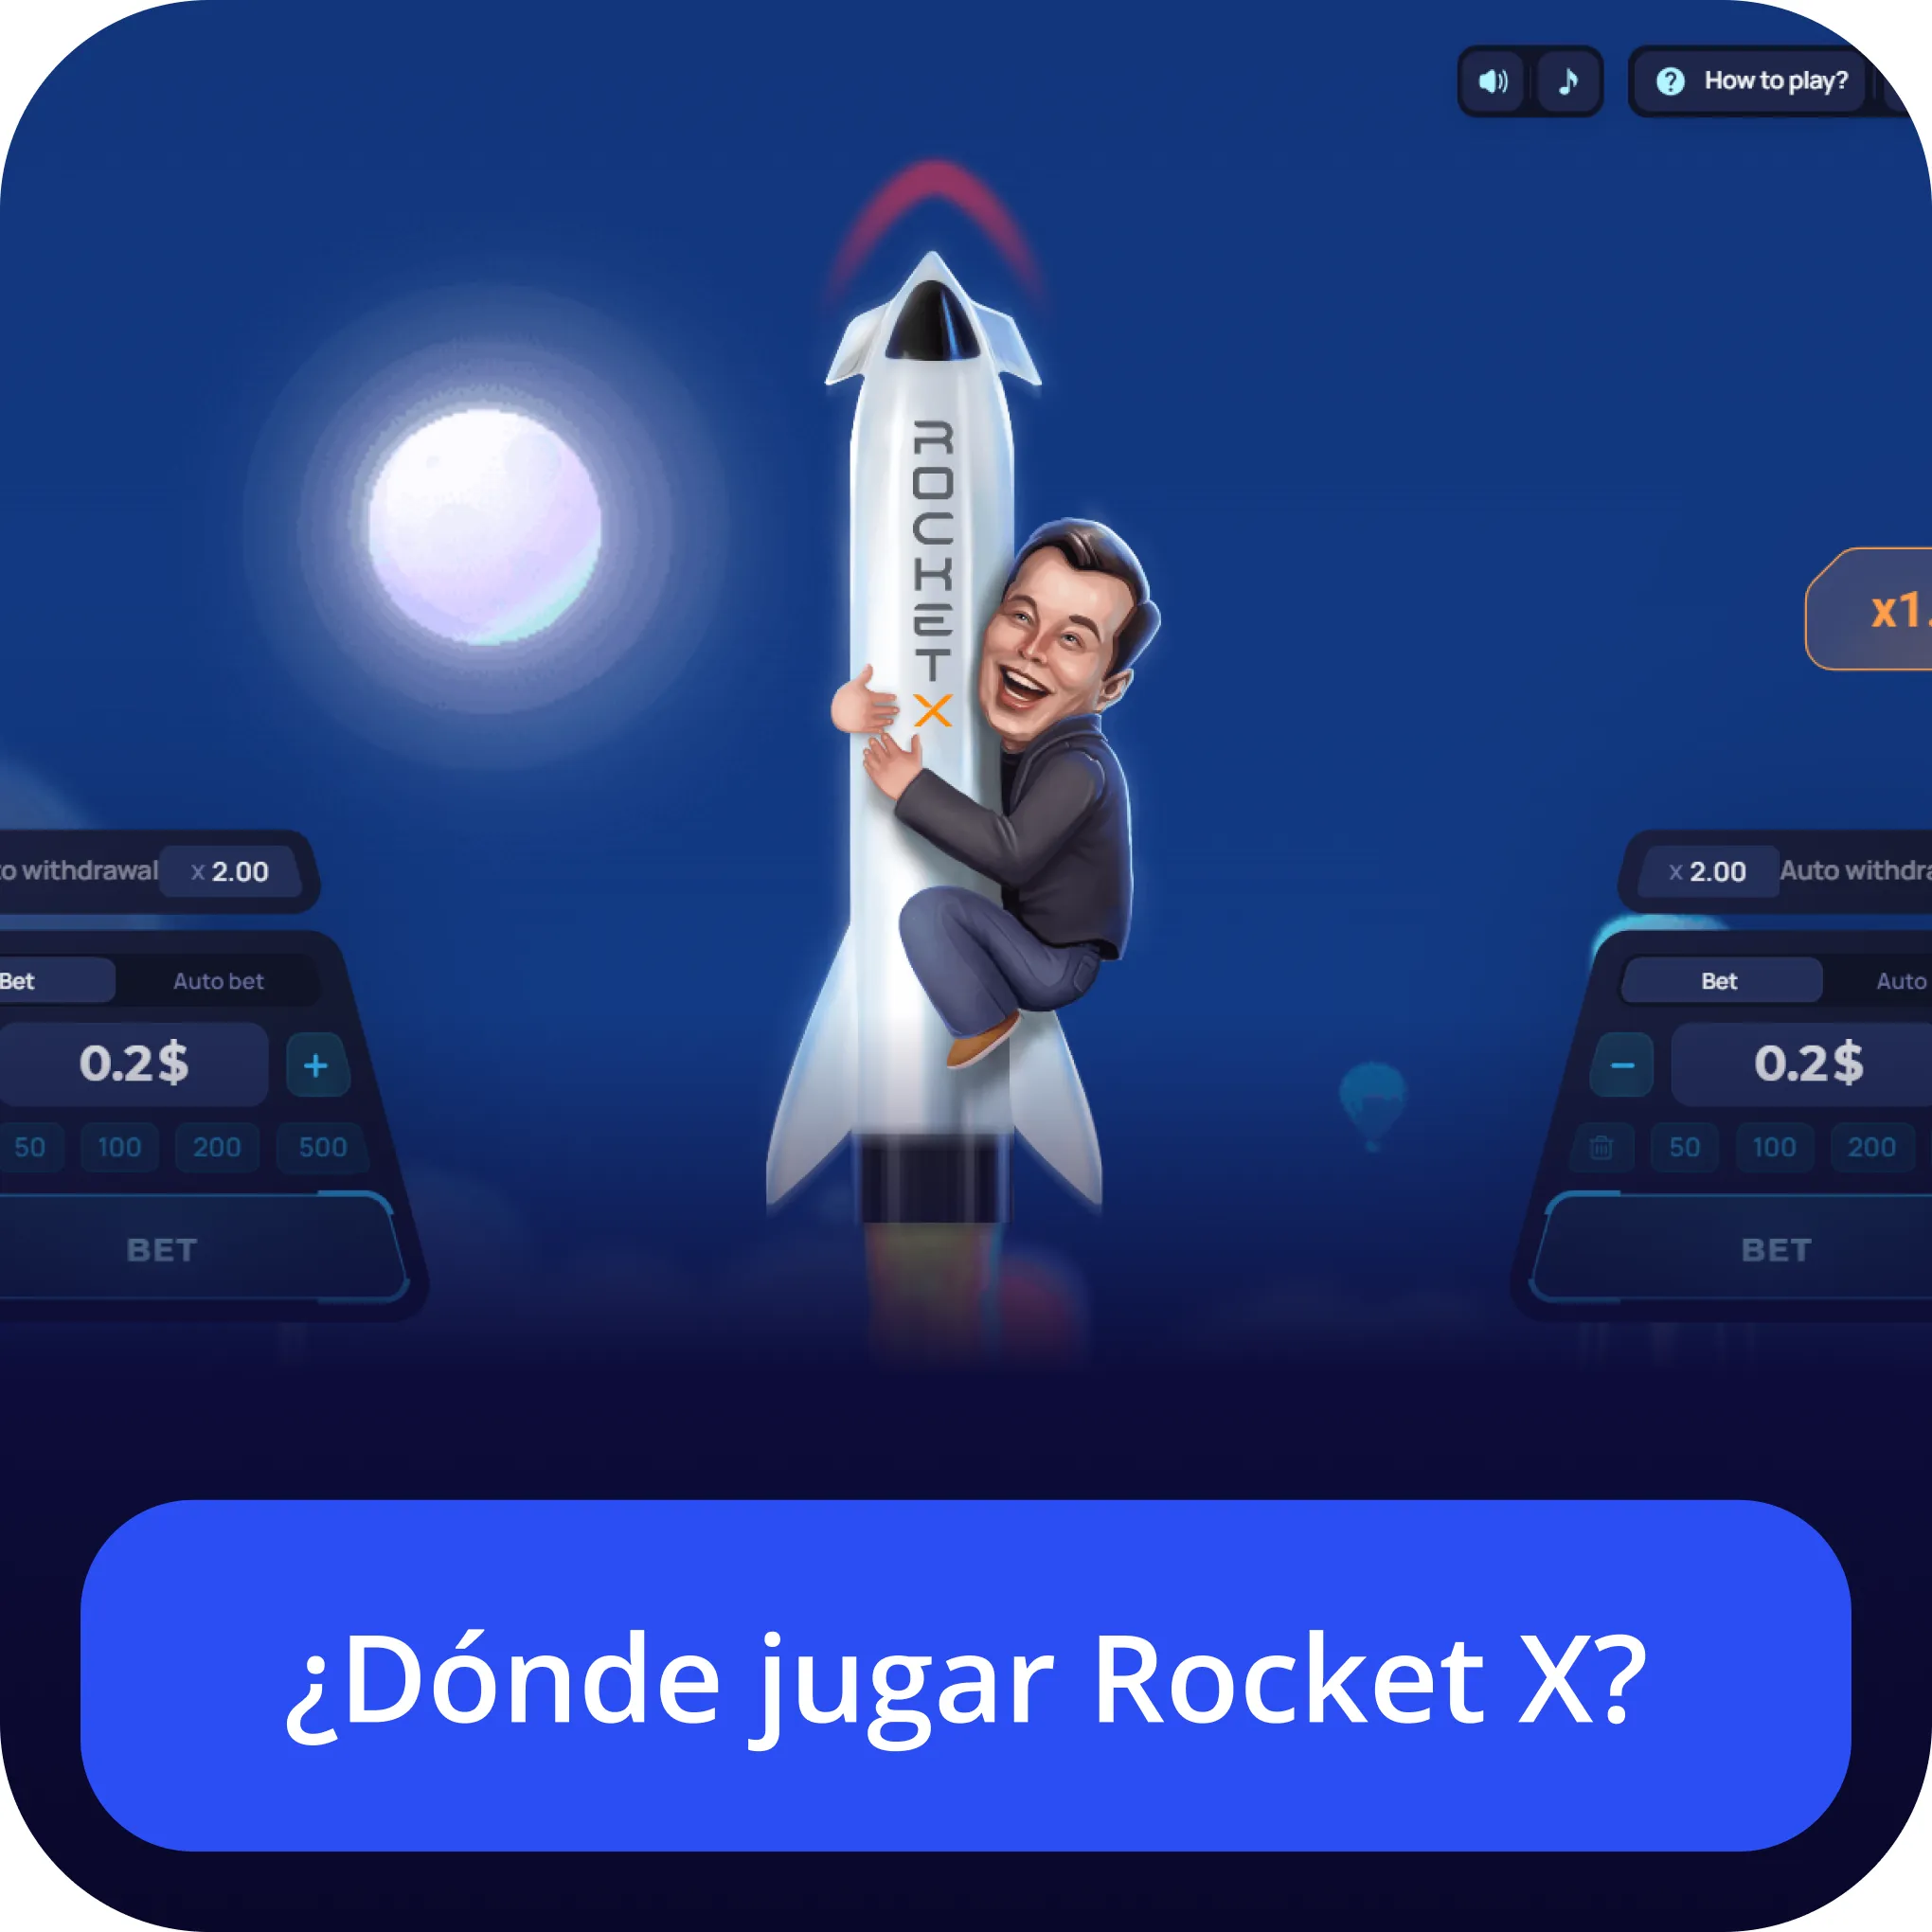 dónde jugar rocket x